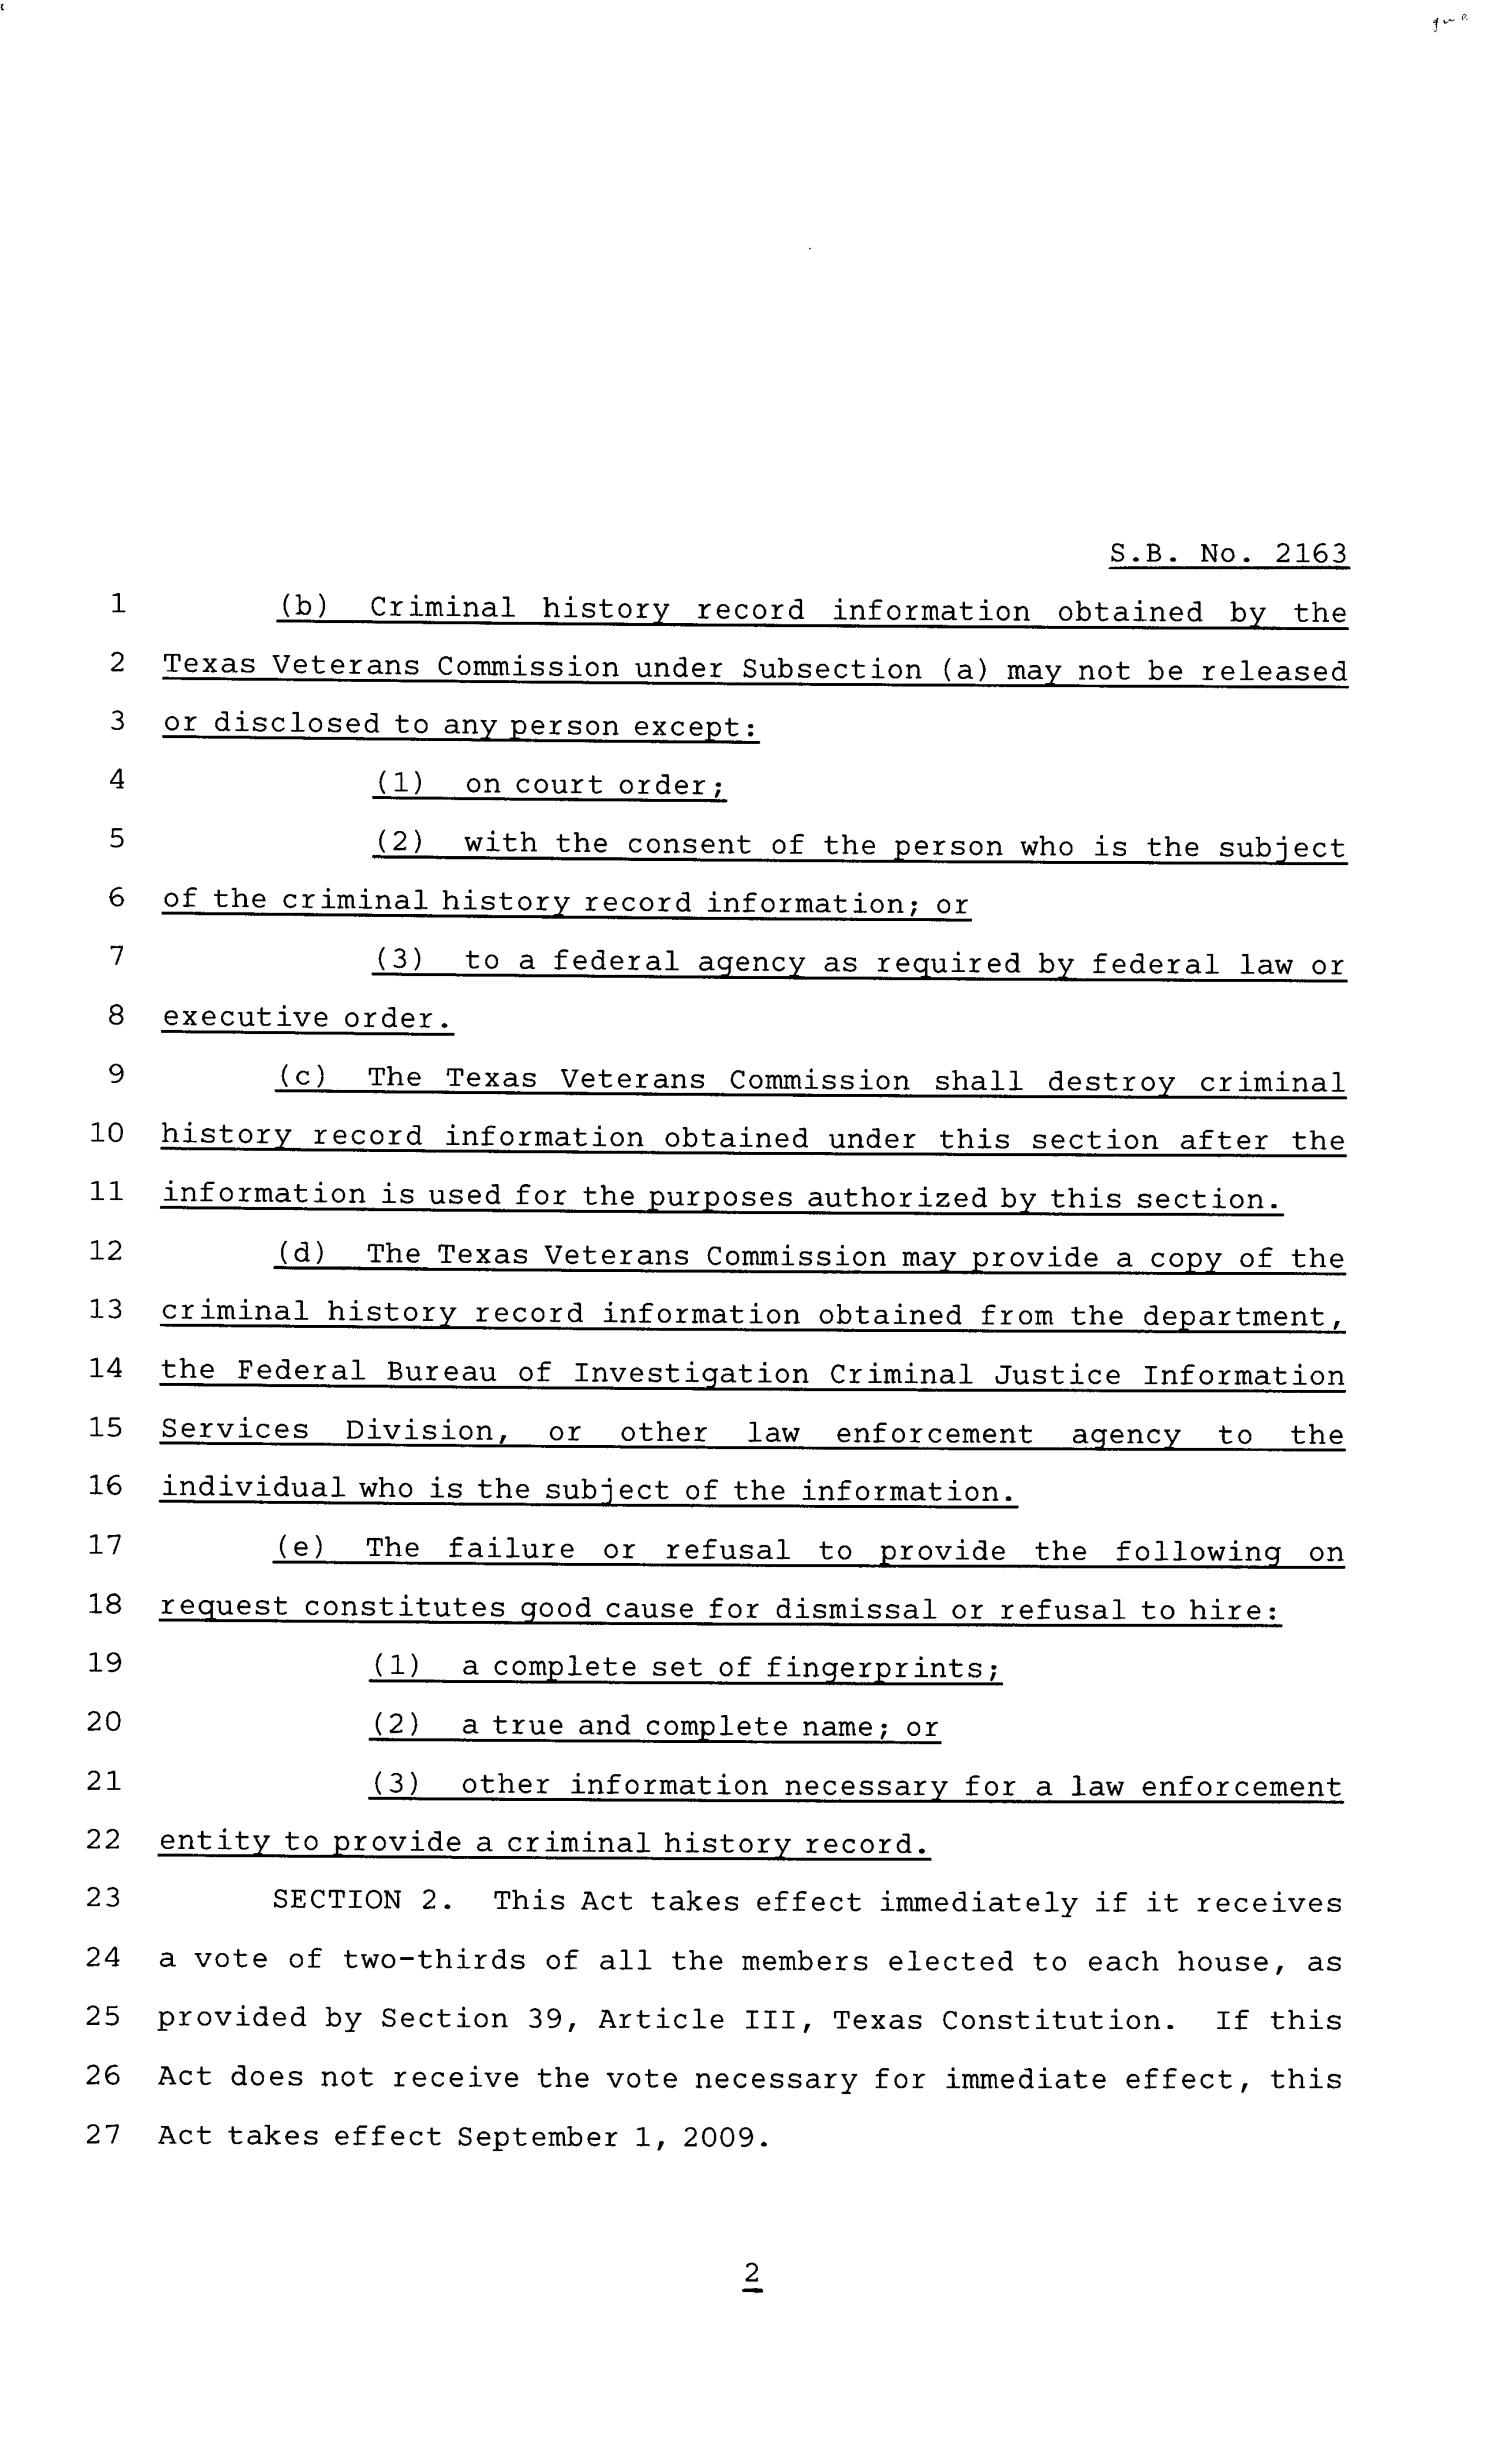 81st Texas Legislature, Senate Bill 2163, Chapter 67
                                                
                                                    [Sequence #]: 2 of 3
                                                